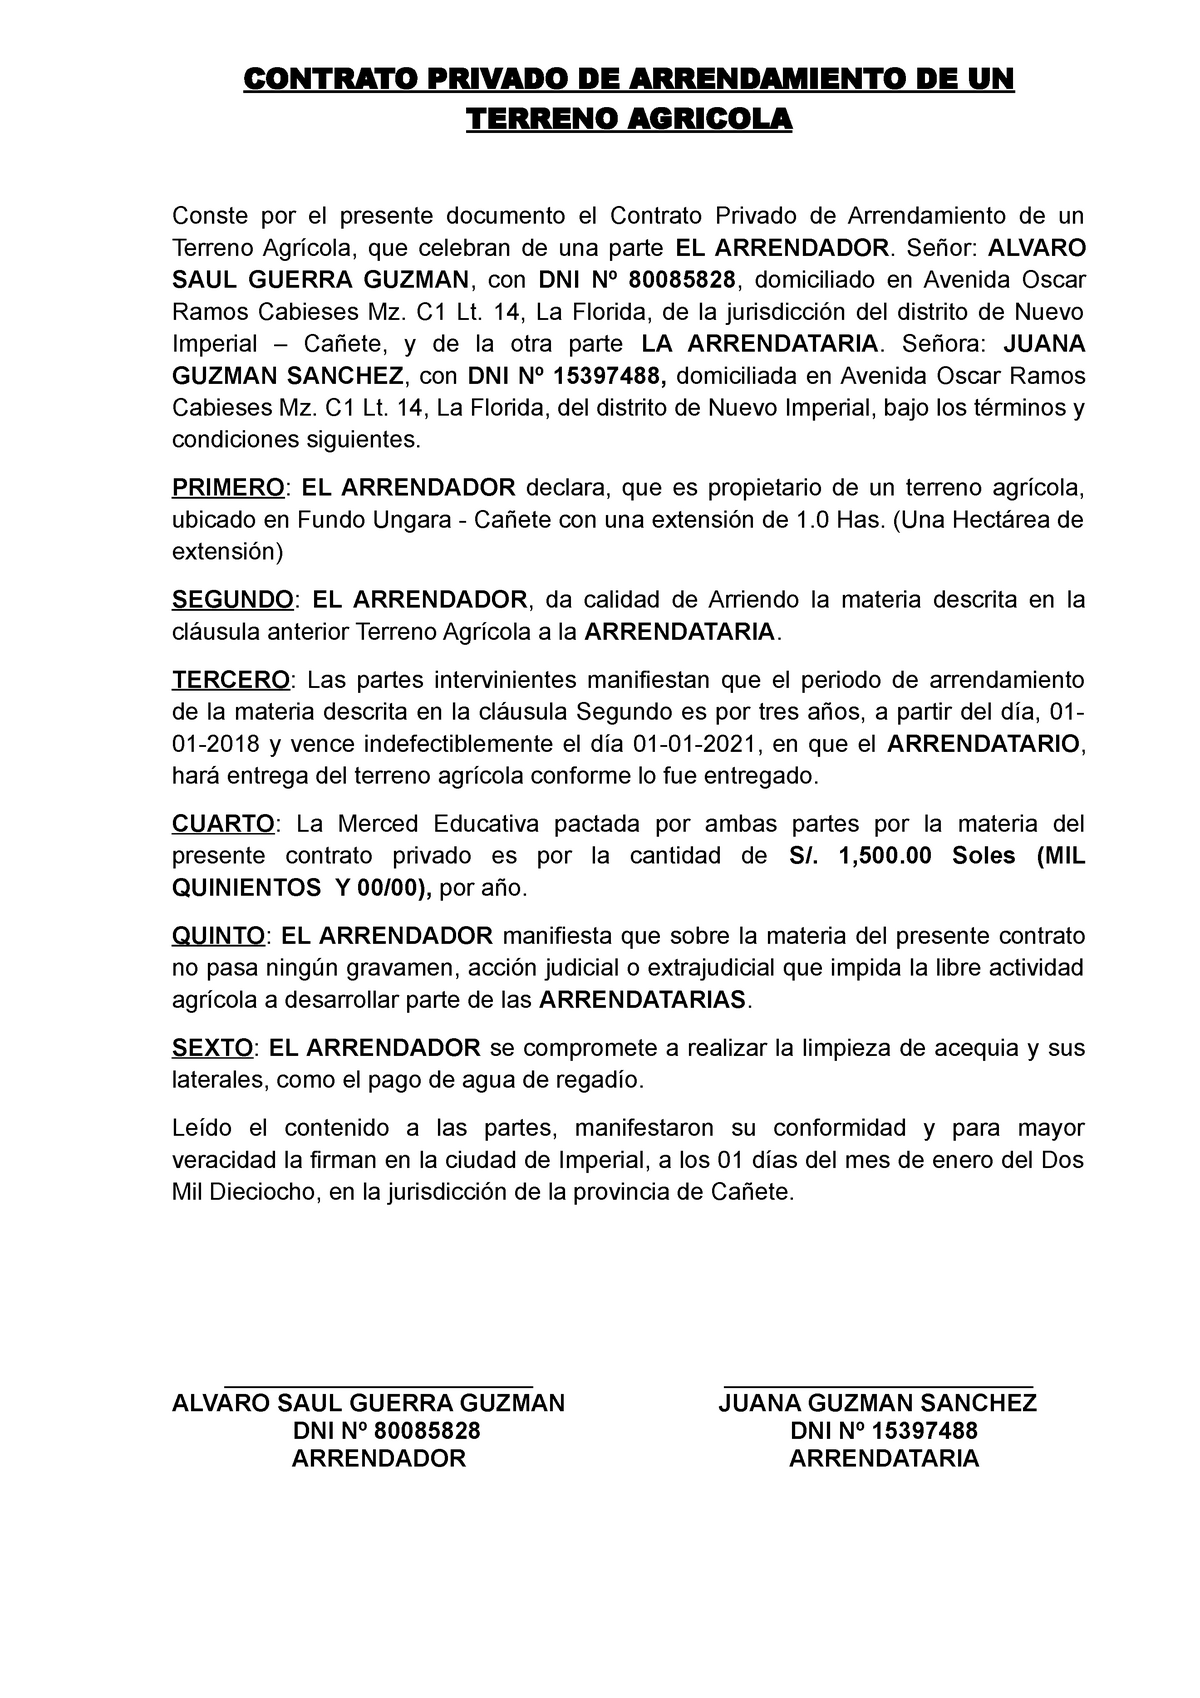 Contrato Privado DE Arrendamiento DE UN Terreno Agricola 2019 - CONTRATO  PRIVADO DE ARRENDAMIENTO DE - Studocu